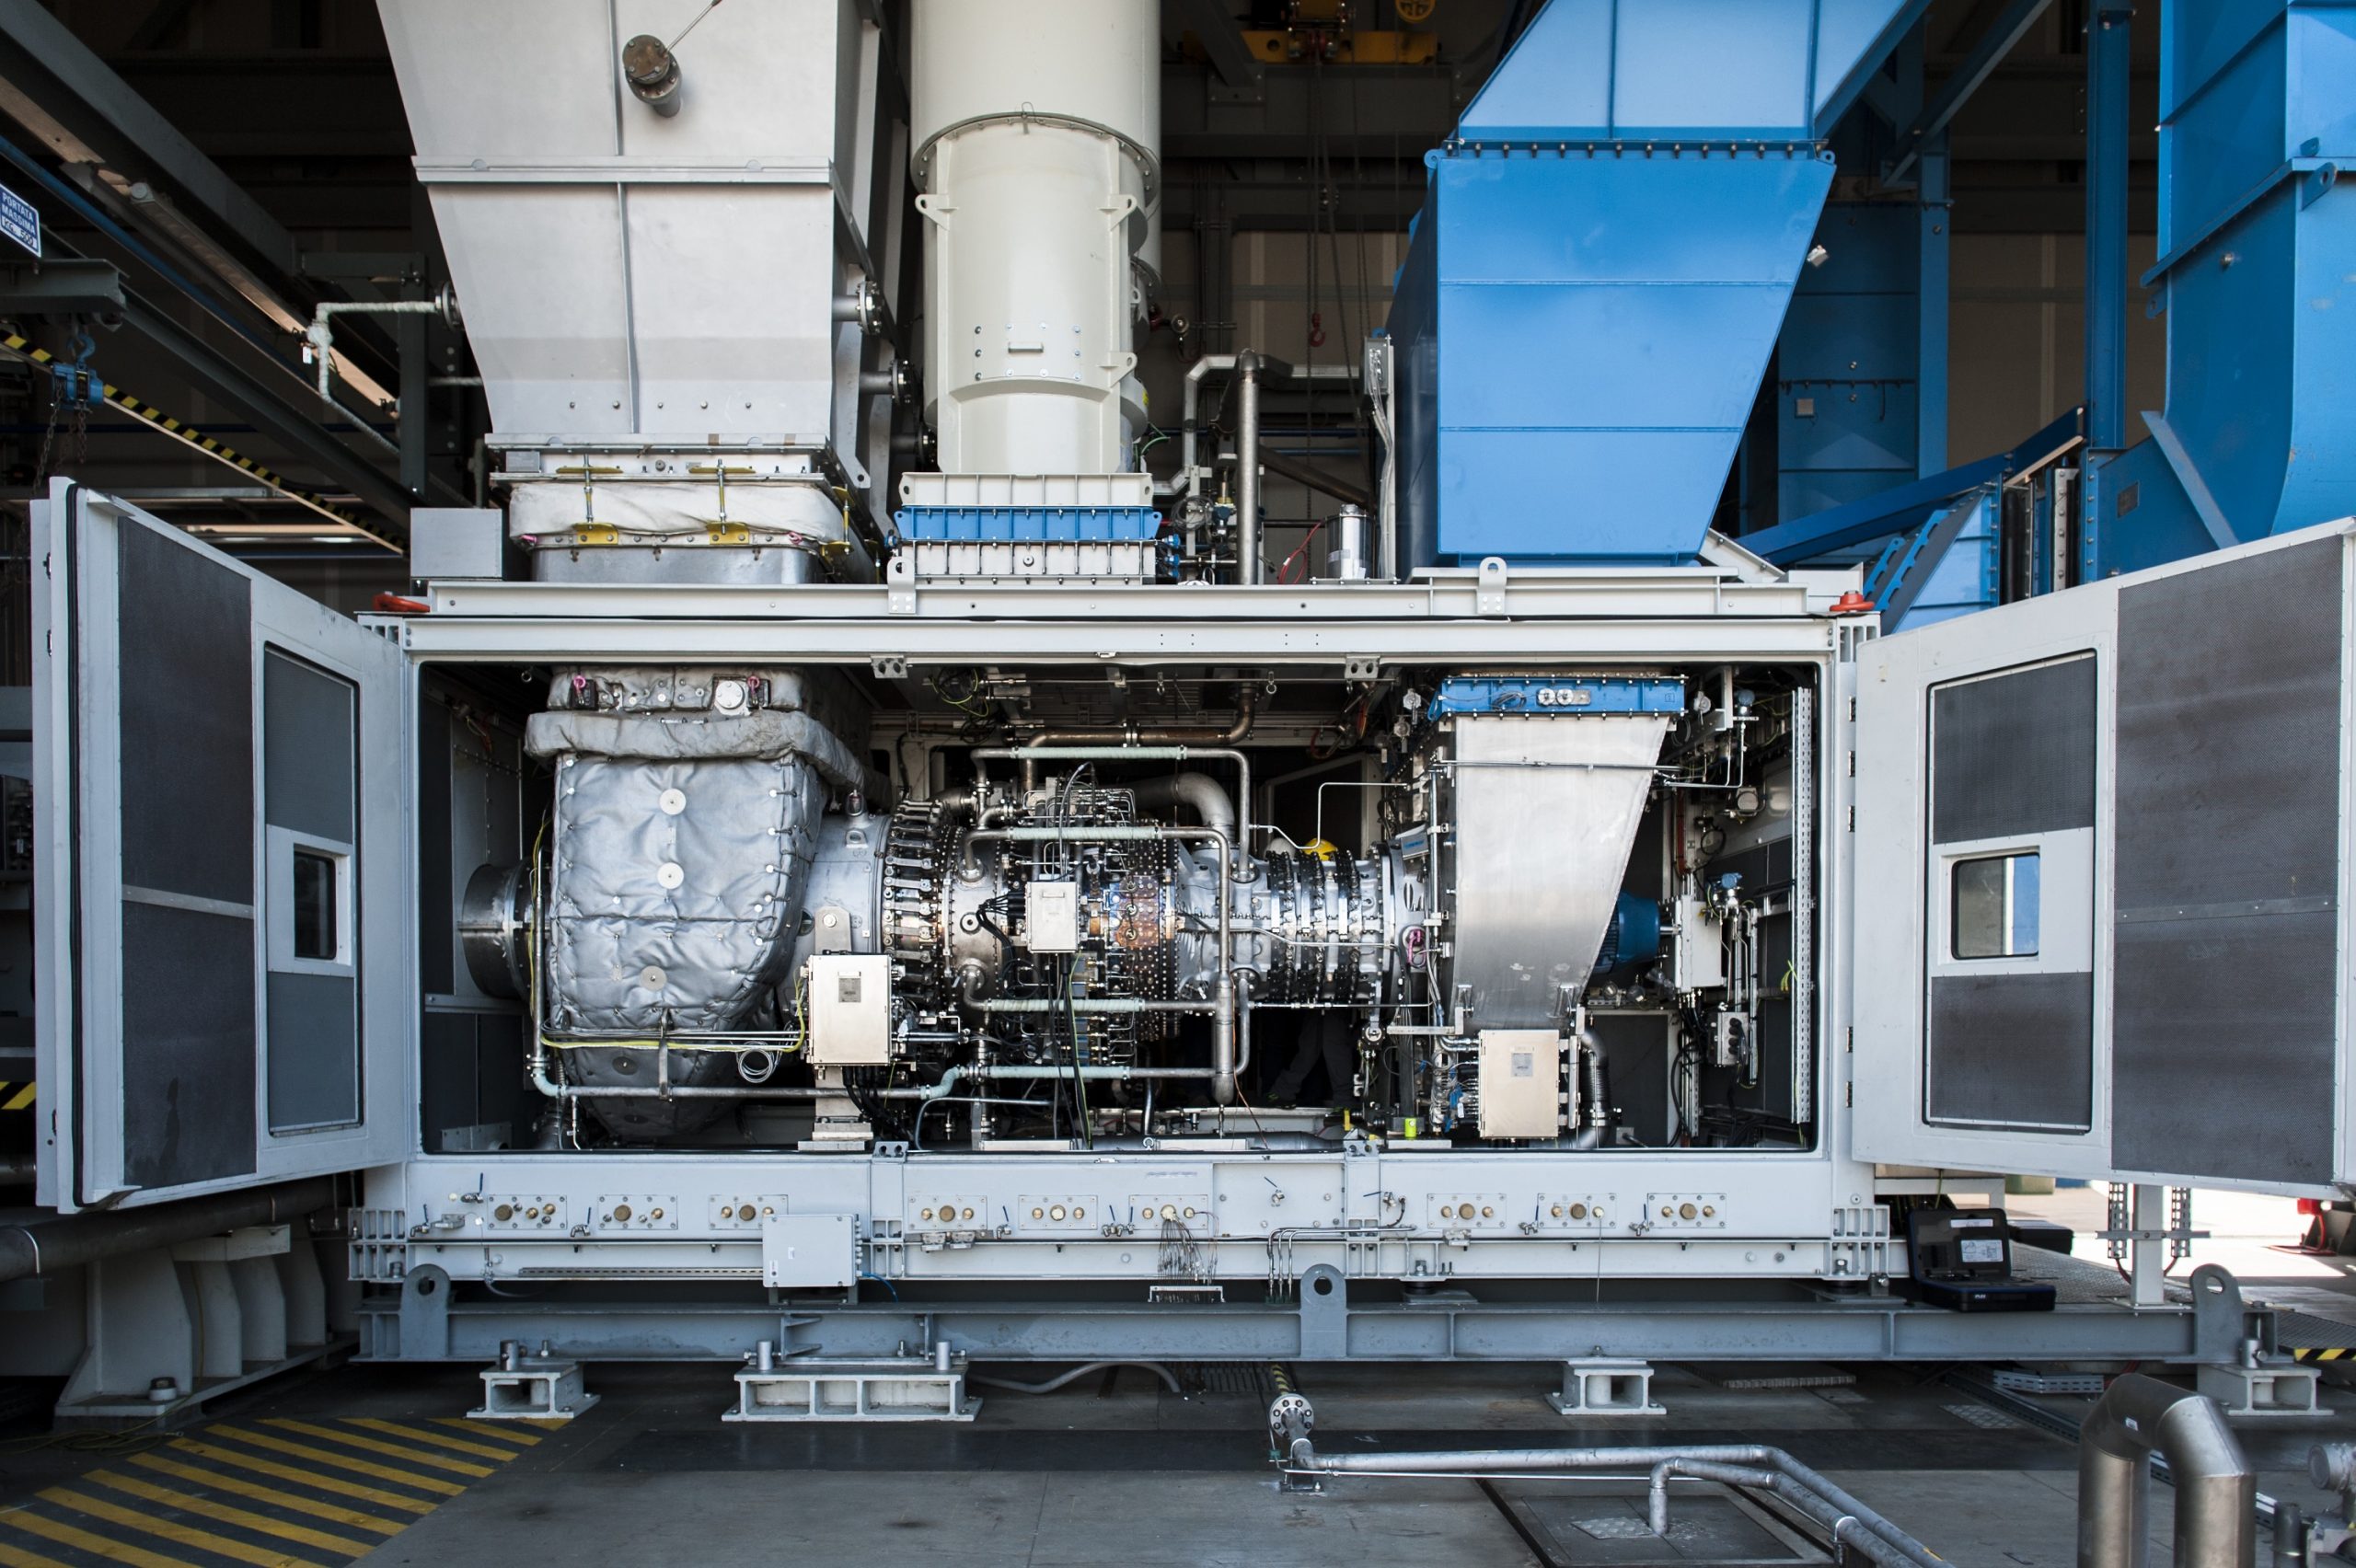 معدات من إنتاج شركة بيكر هيوز لاستعمال وقود الهيدروجين في محطات تعمل بالغاز